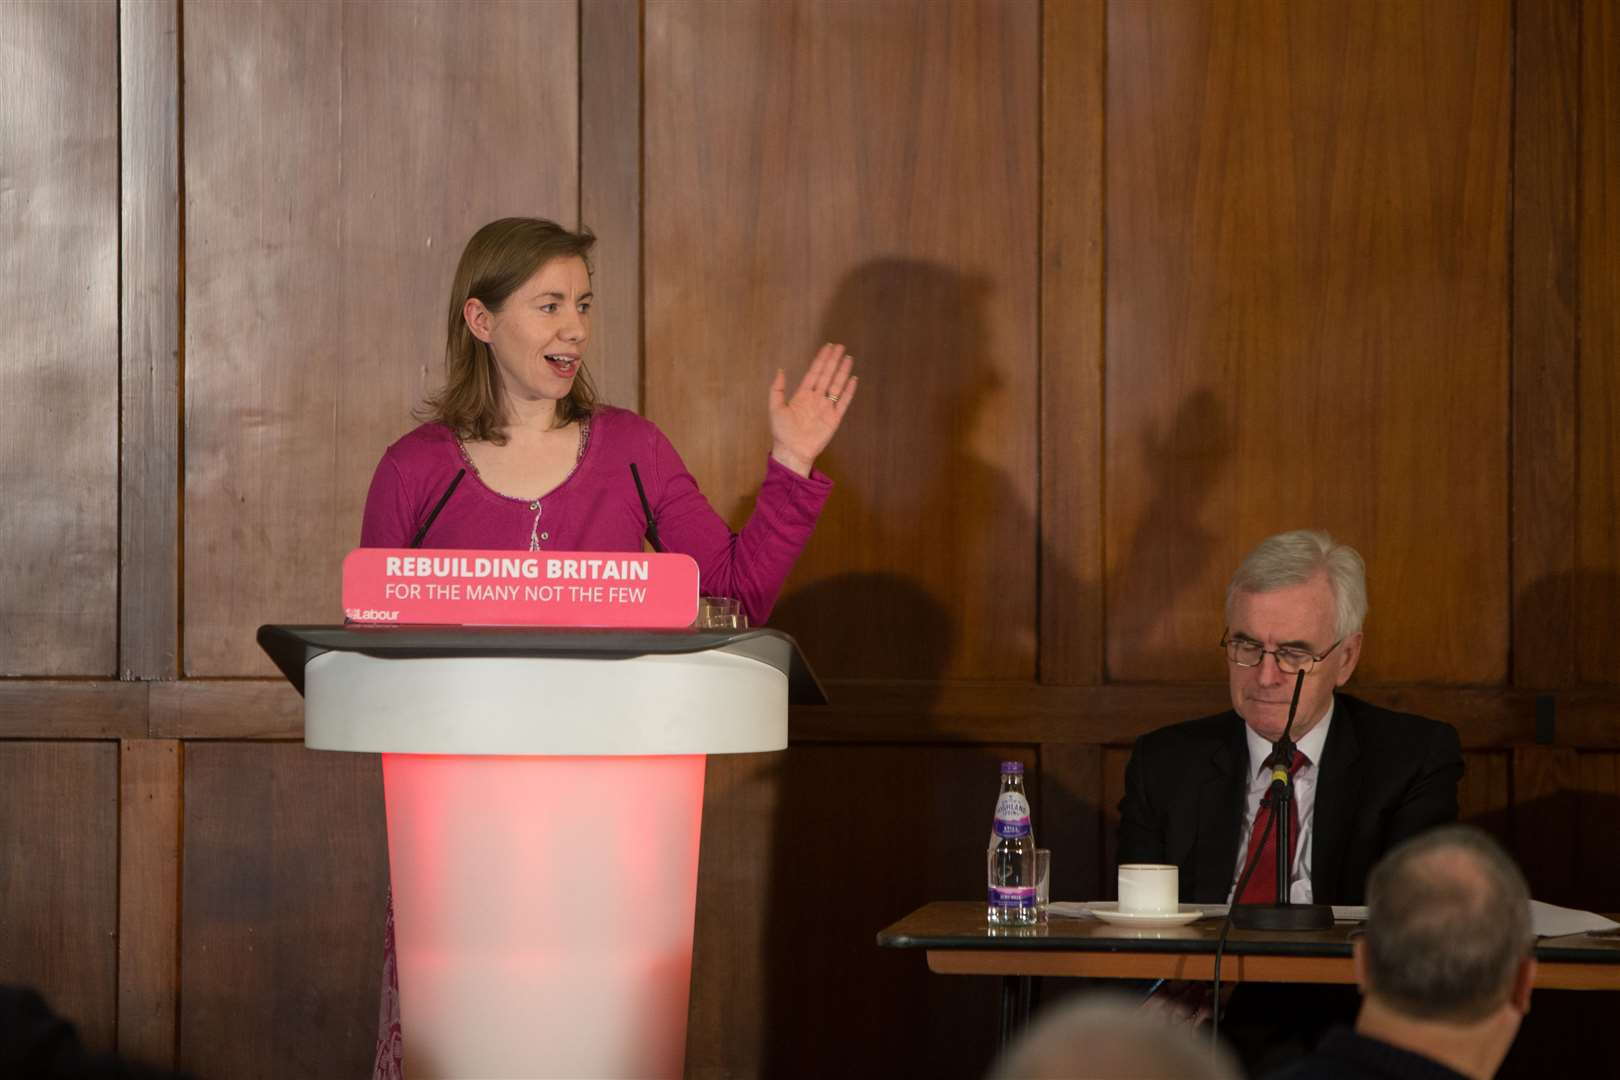 Cllr Lauren Sullivan, left, pictured with Labour's Shadow Chancellor John McDonnell